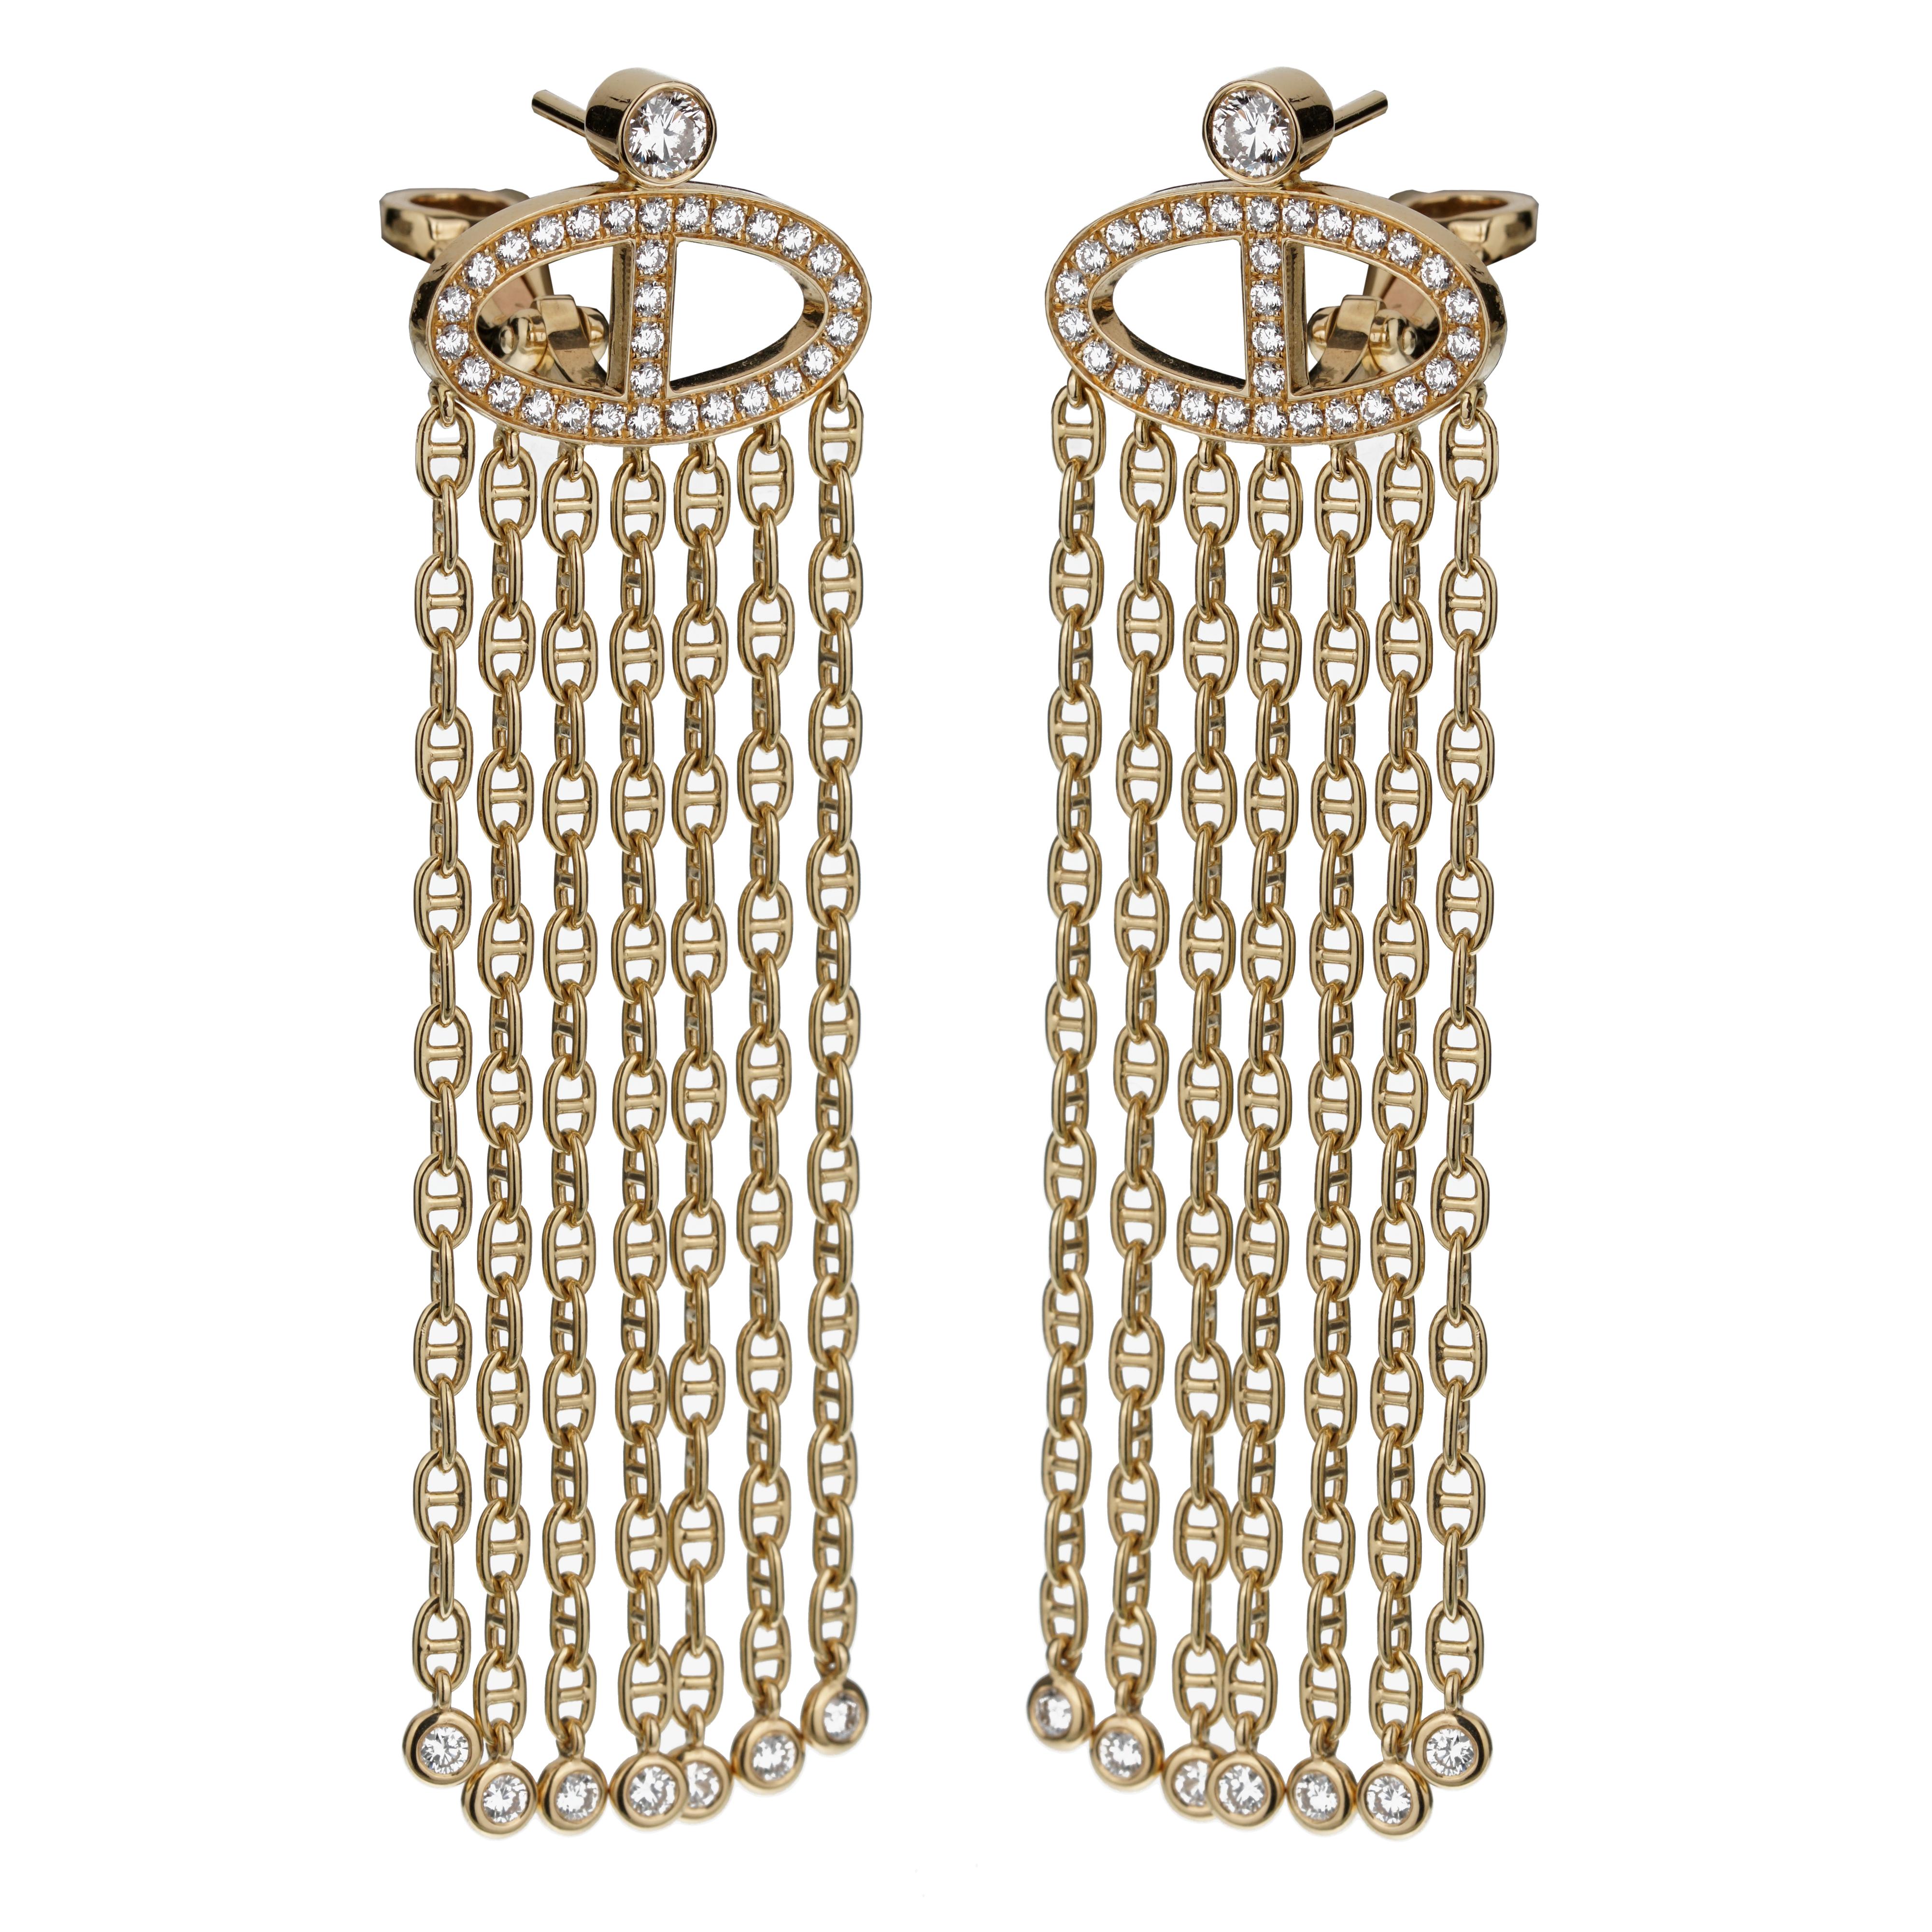 L'élégance redéfinie, les boucles d'oreilles Chaine d'Ancre en or jaune, édition limitée de diamants Hermès, sont un mélange magistral de luxe, d'artisanat et de design intemporel, emblématique de l'héritage inégalé d'Hermès.